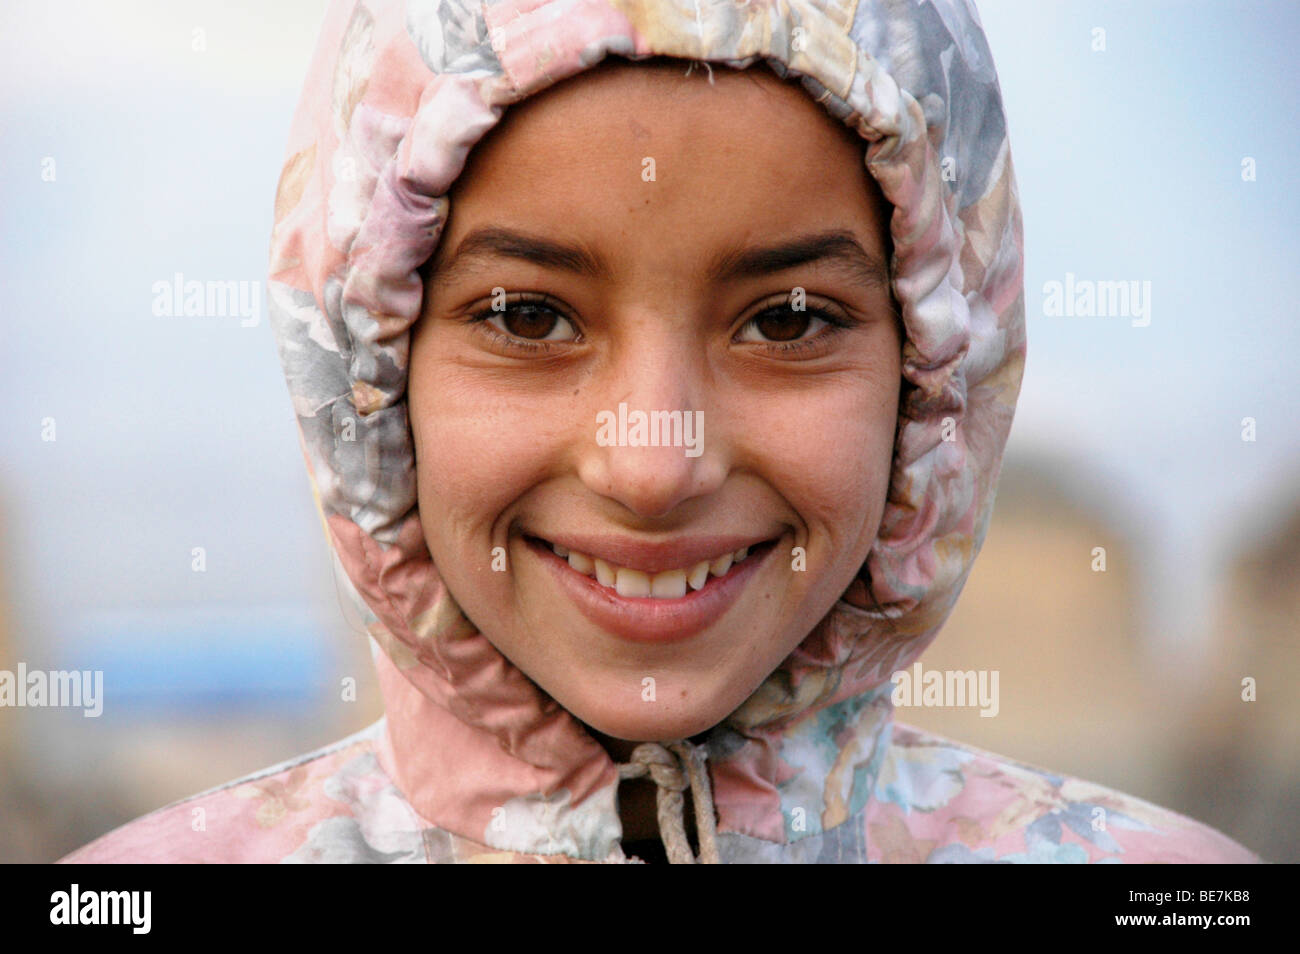 Un portrait d'une jeune fille afghane appauvris, prises à la périphérie de Kaboul, Afghanistan. Banque D'Images